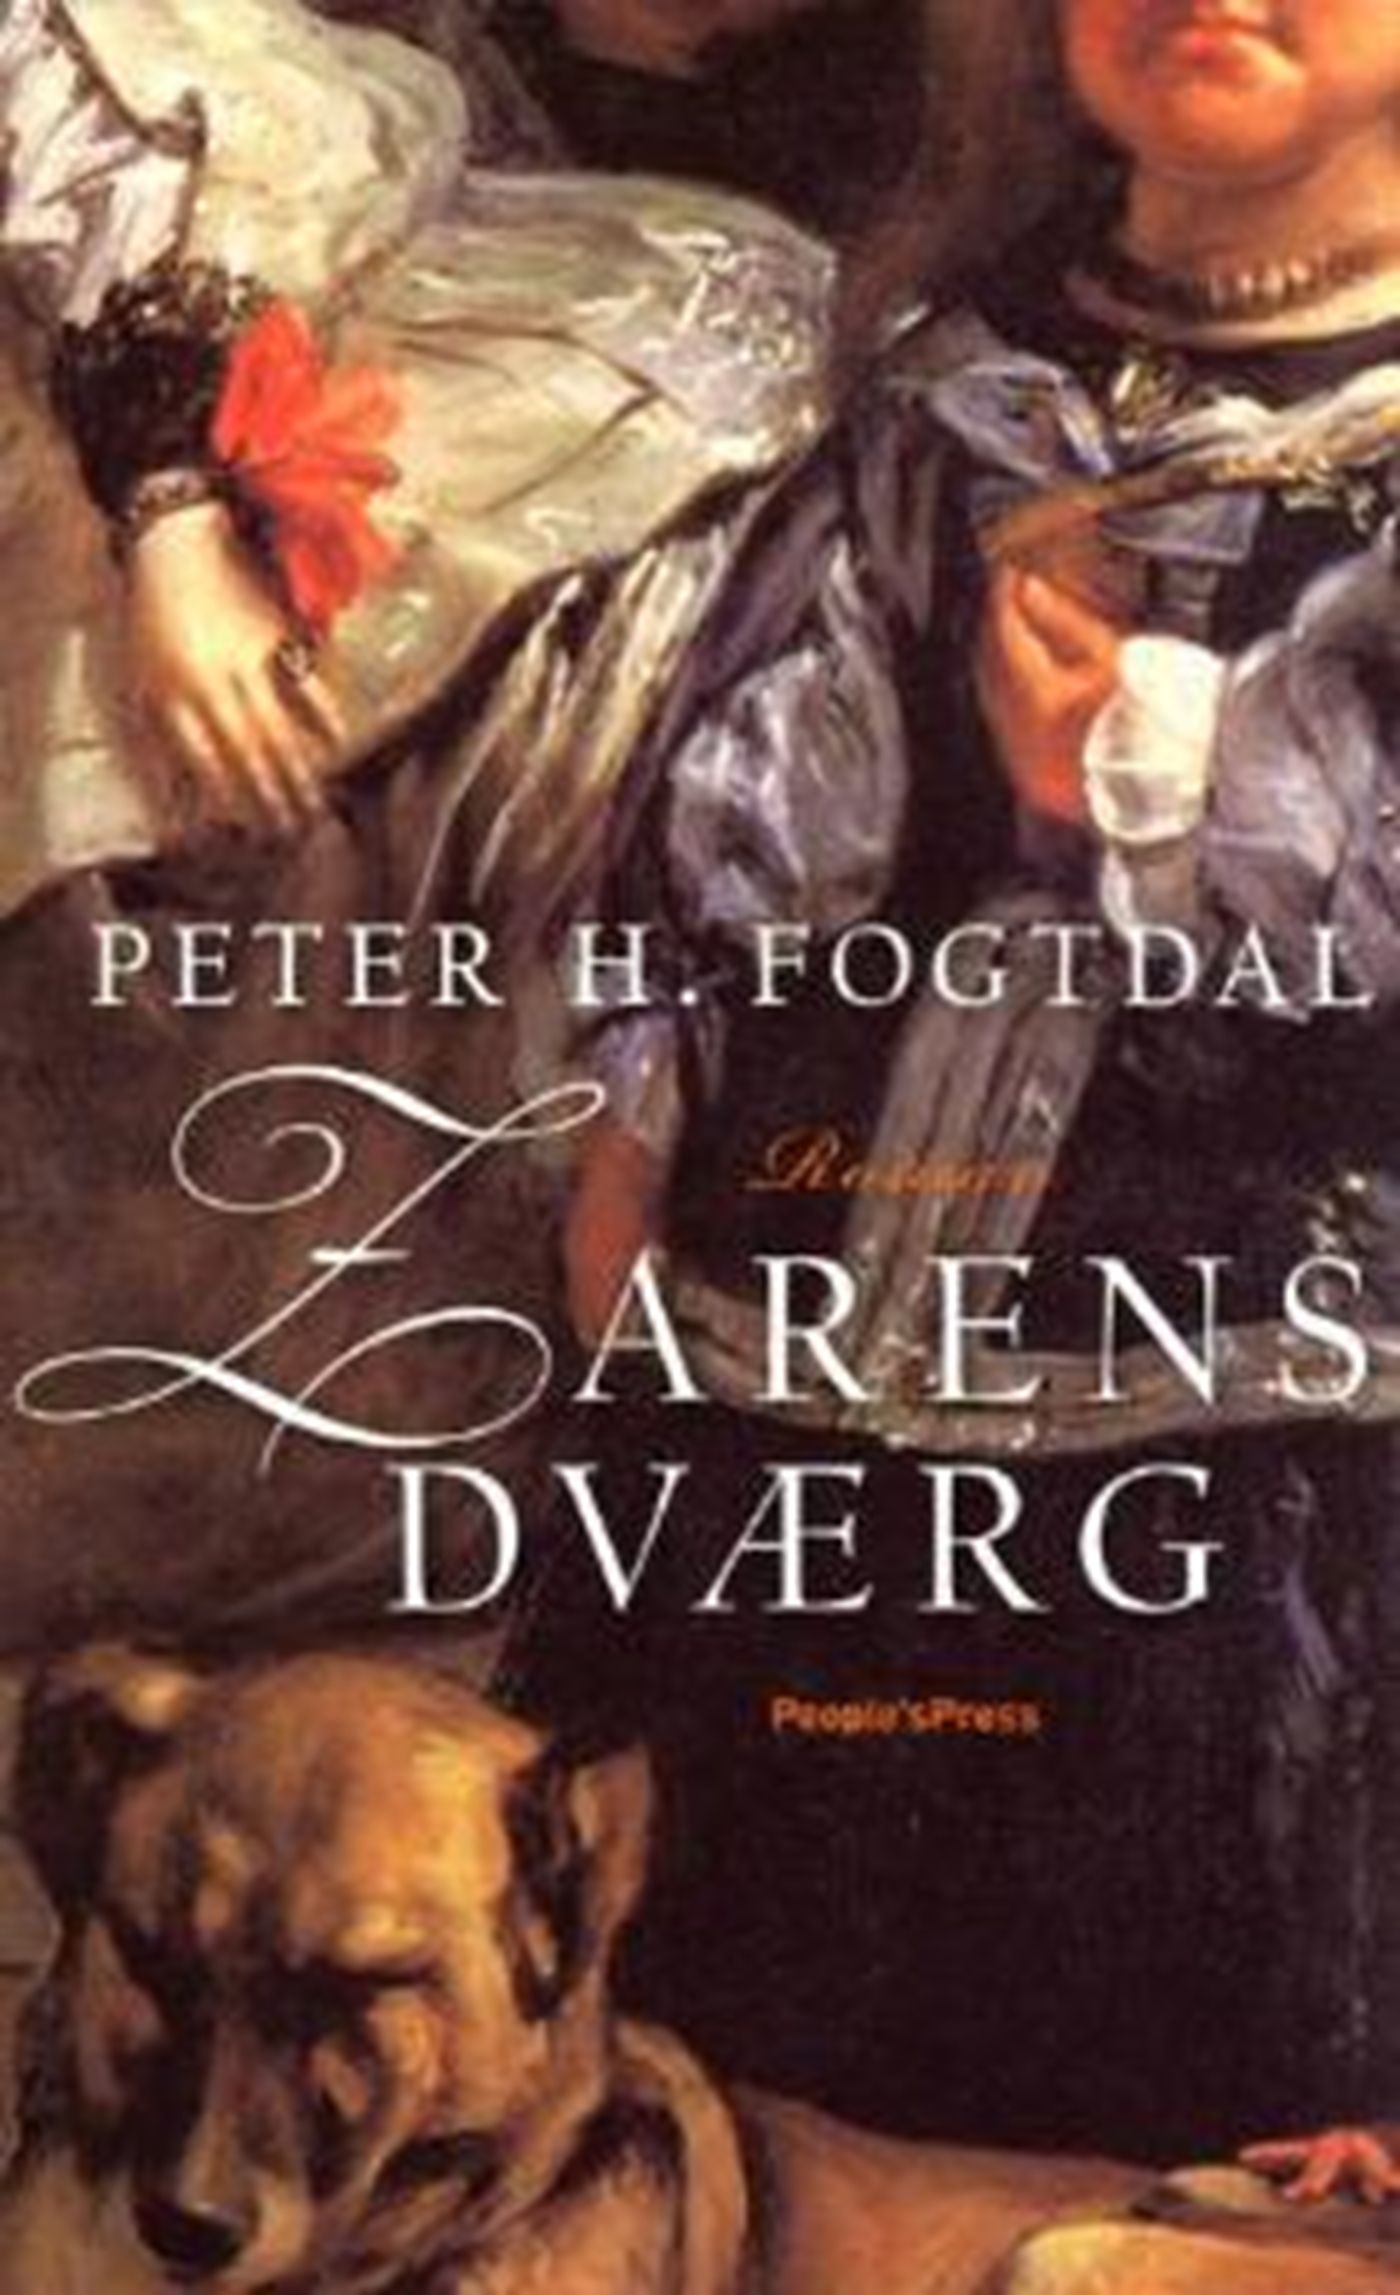 Zarens dværg, eBook by Peter H. Fogtdal